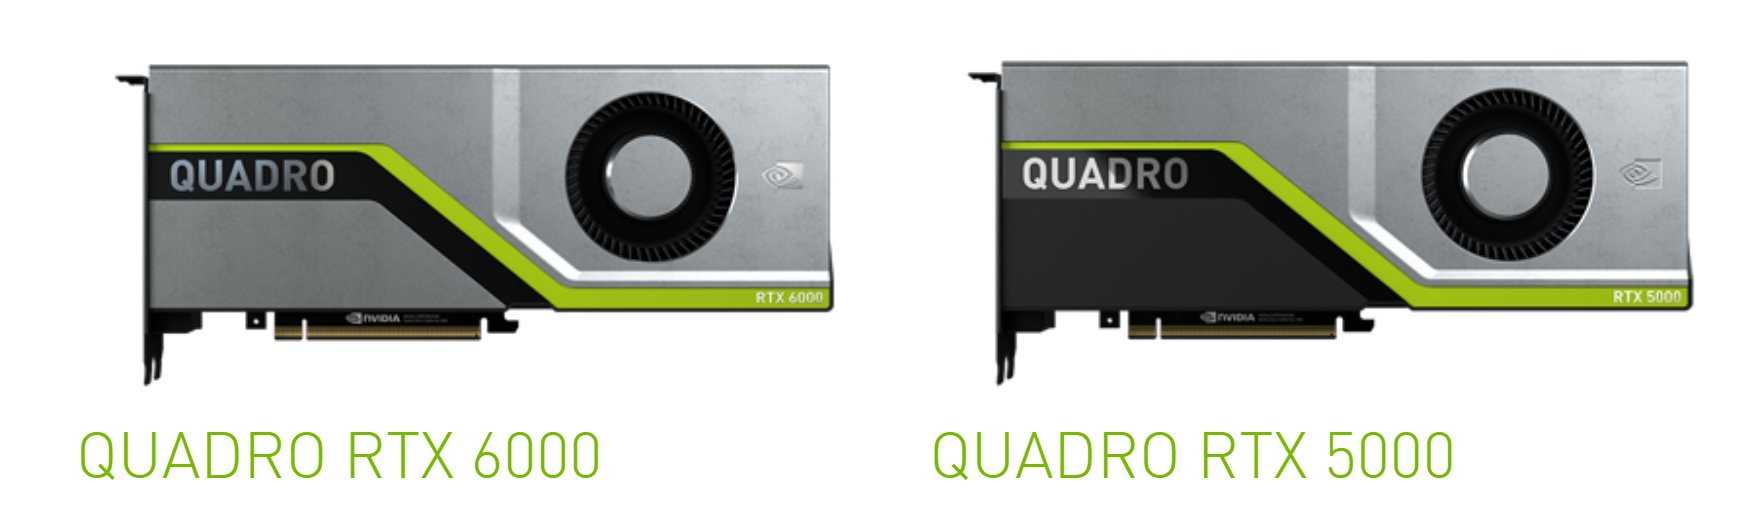 Quadro RTX 8000 und RTX 6000